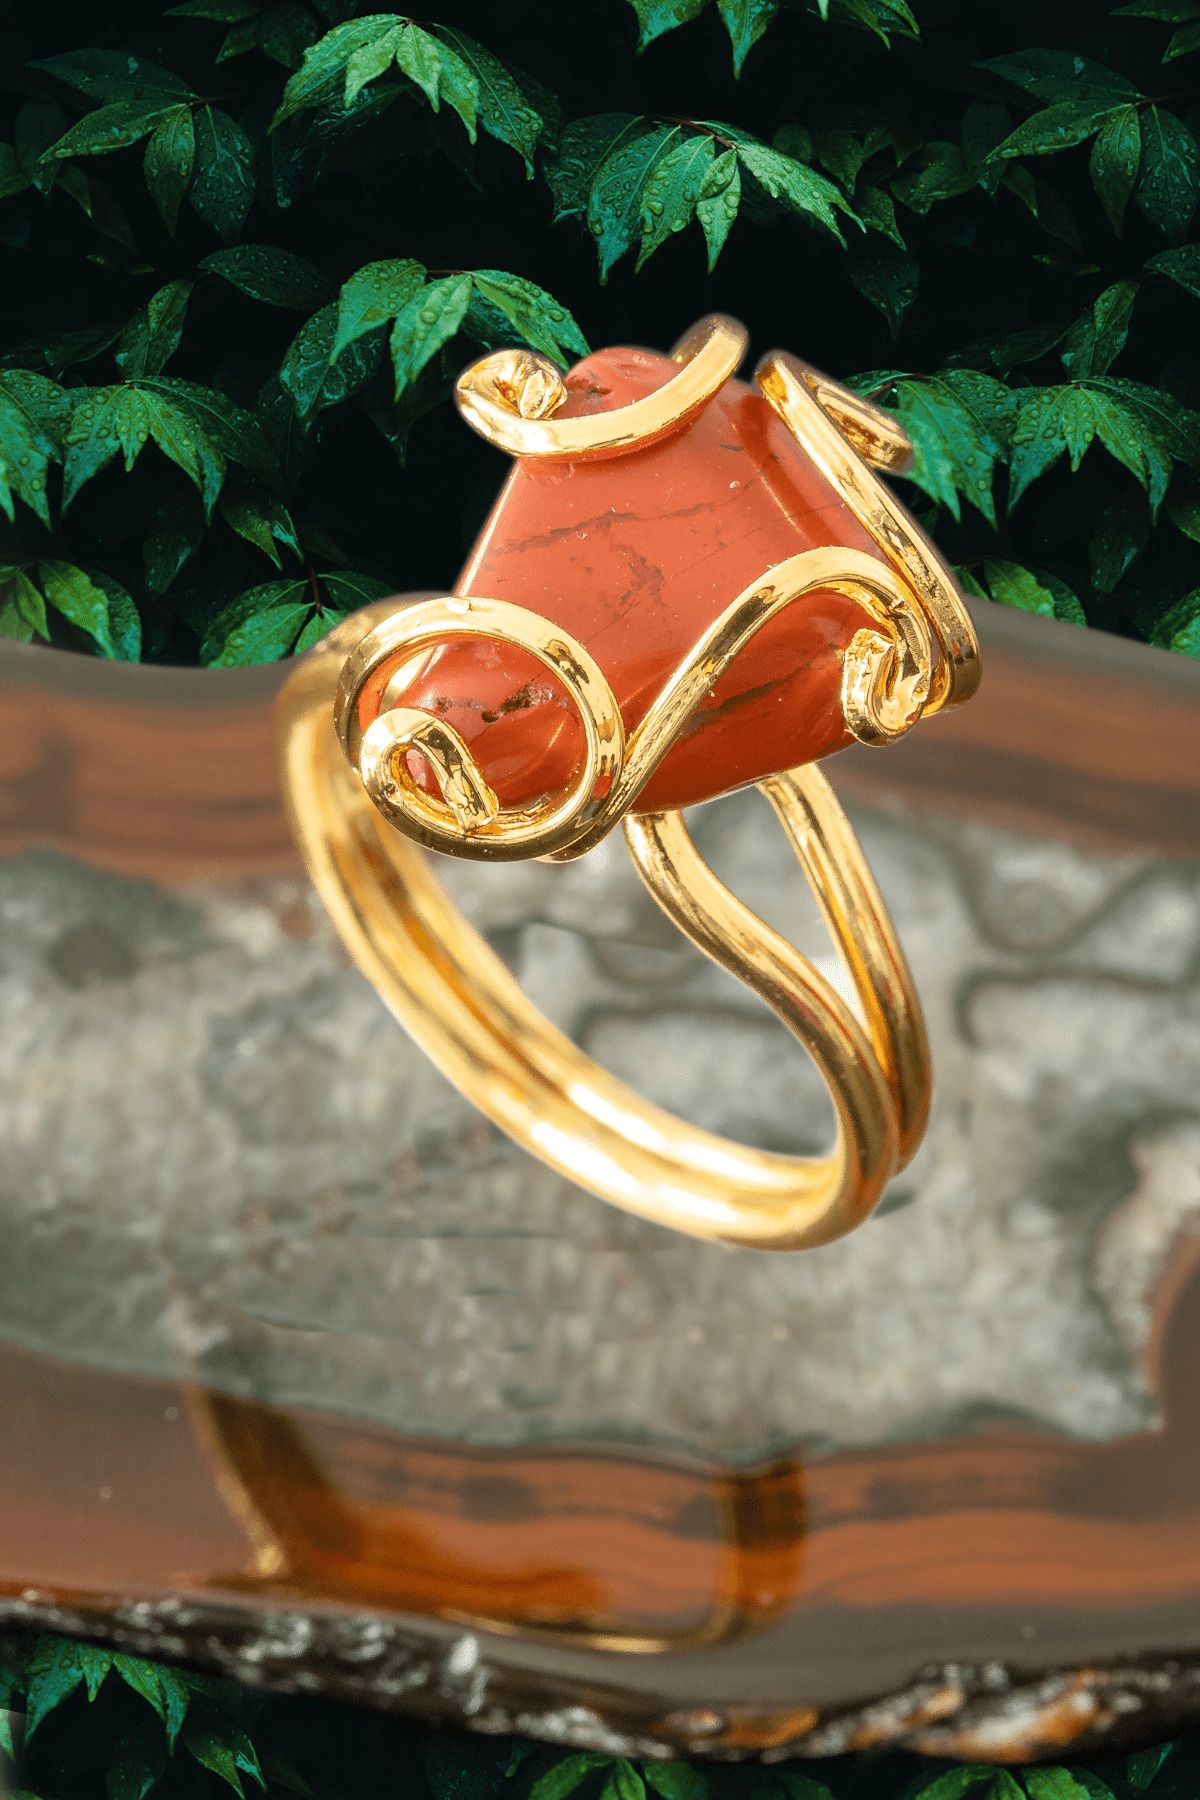 Tesbih Atölyesi Sertifikalı Gold Rokoko Model Kırmızı Jasper Taşı Yüzük - Ayarlamalı